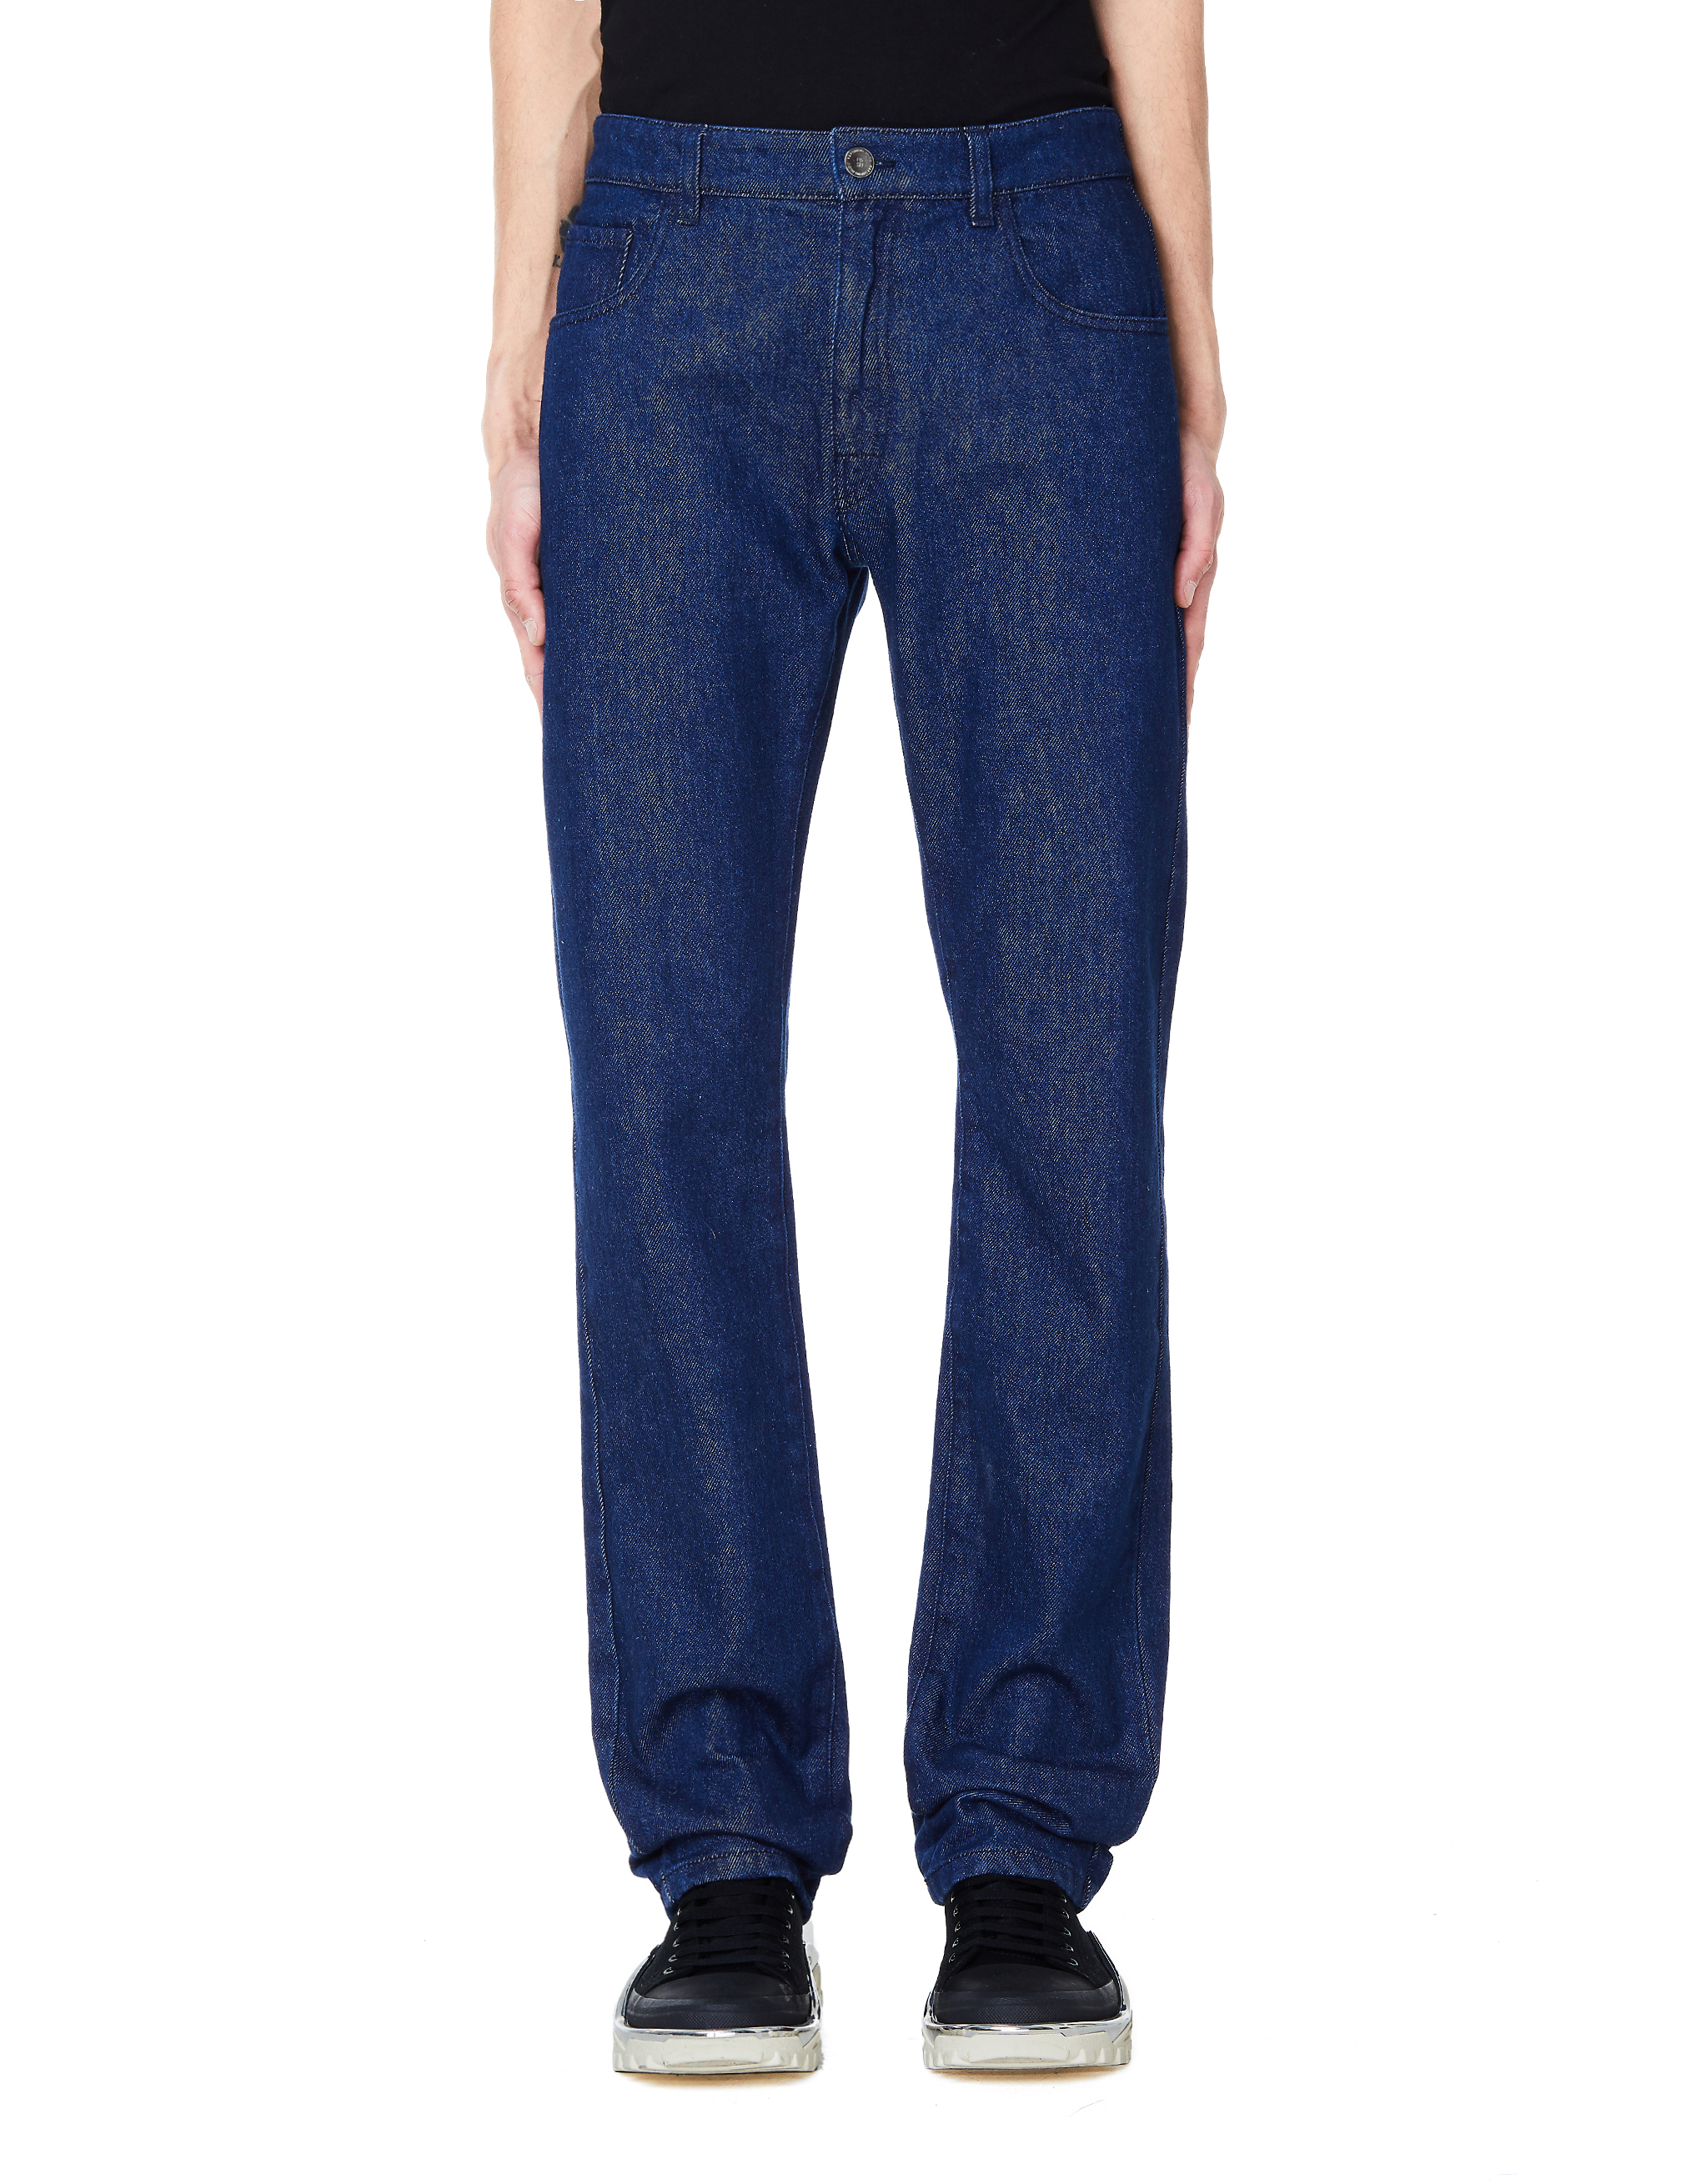 Синие джинсы с декором сзади - Raf Simons 191-310/navy